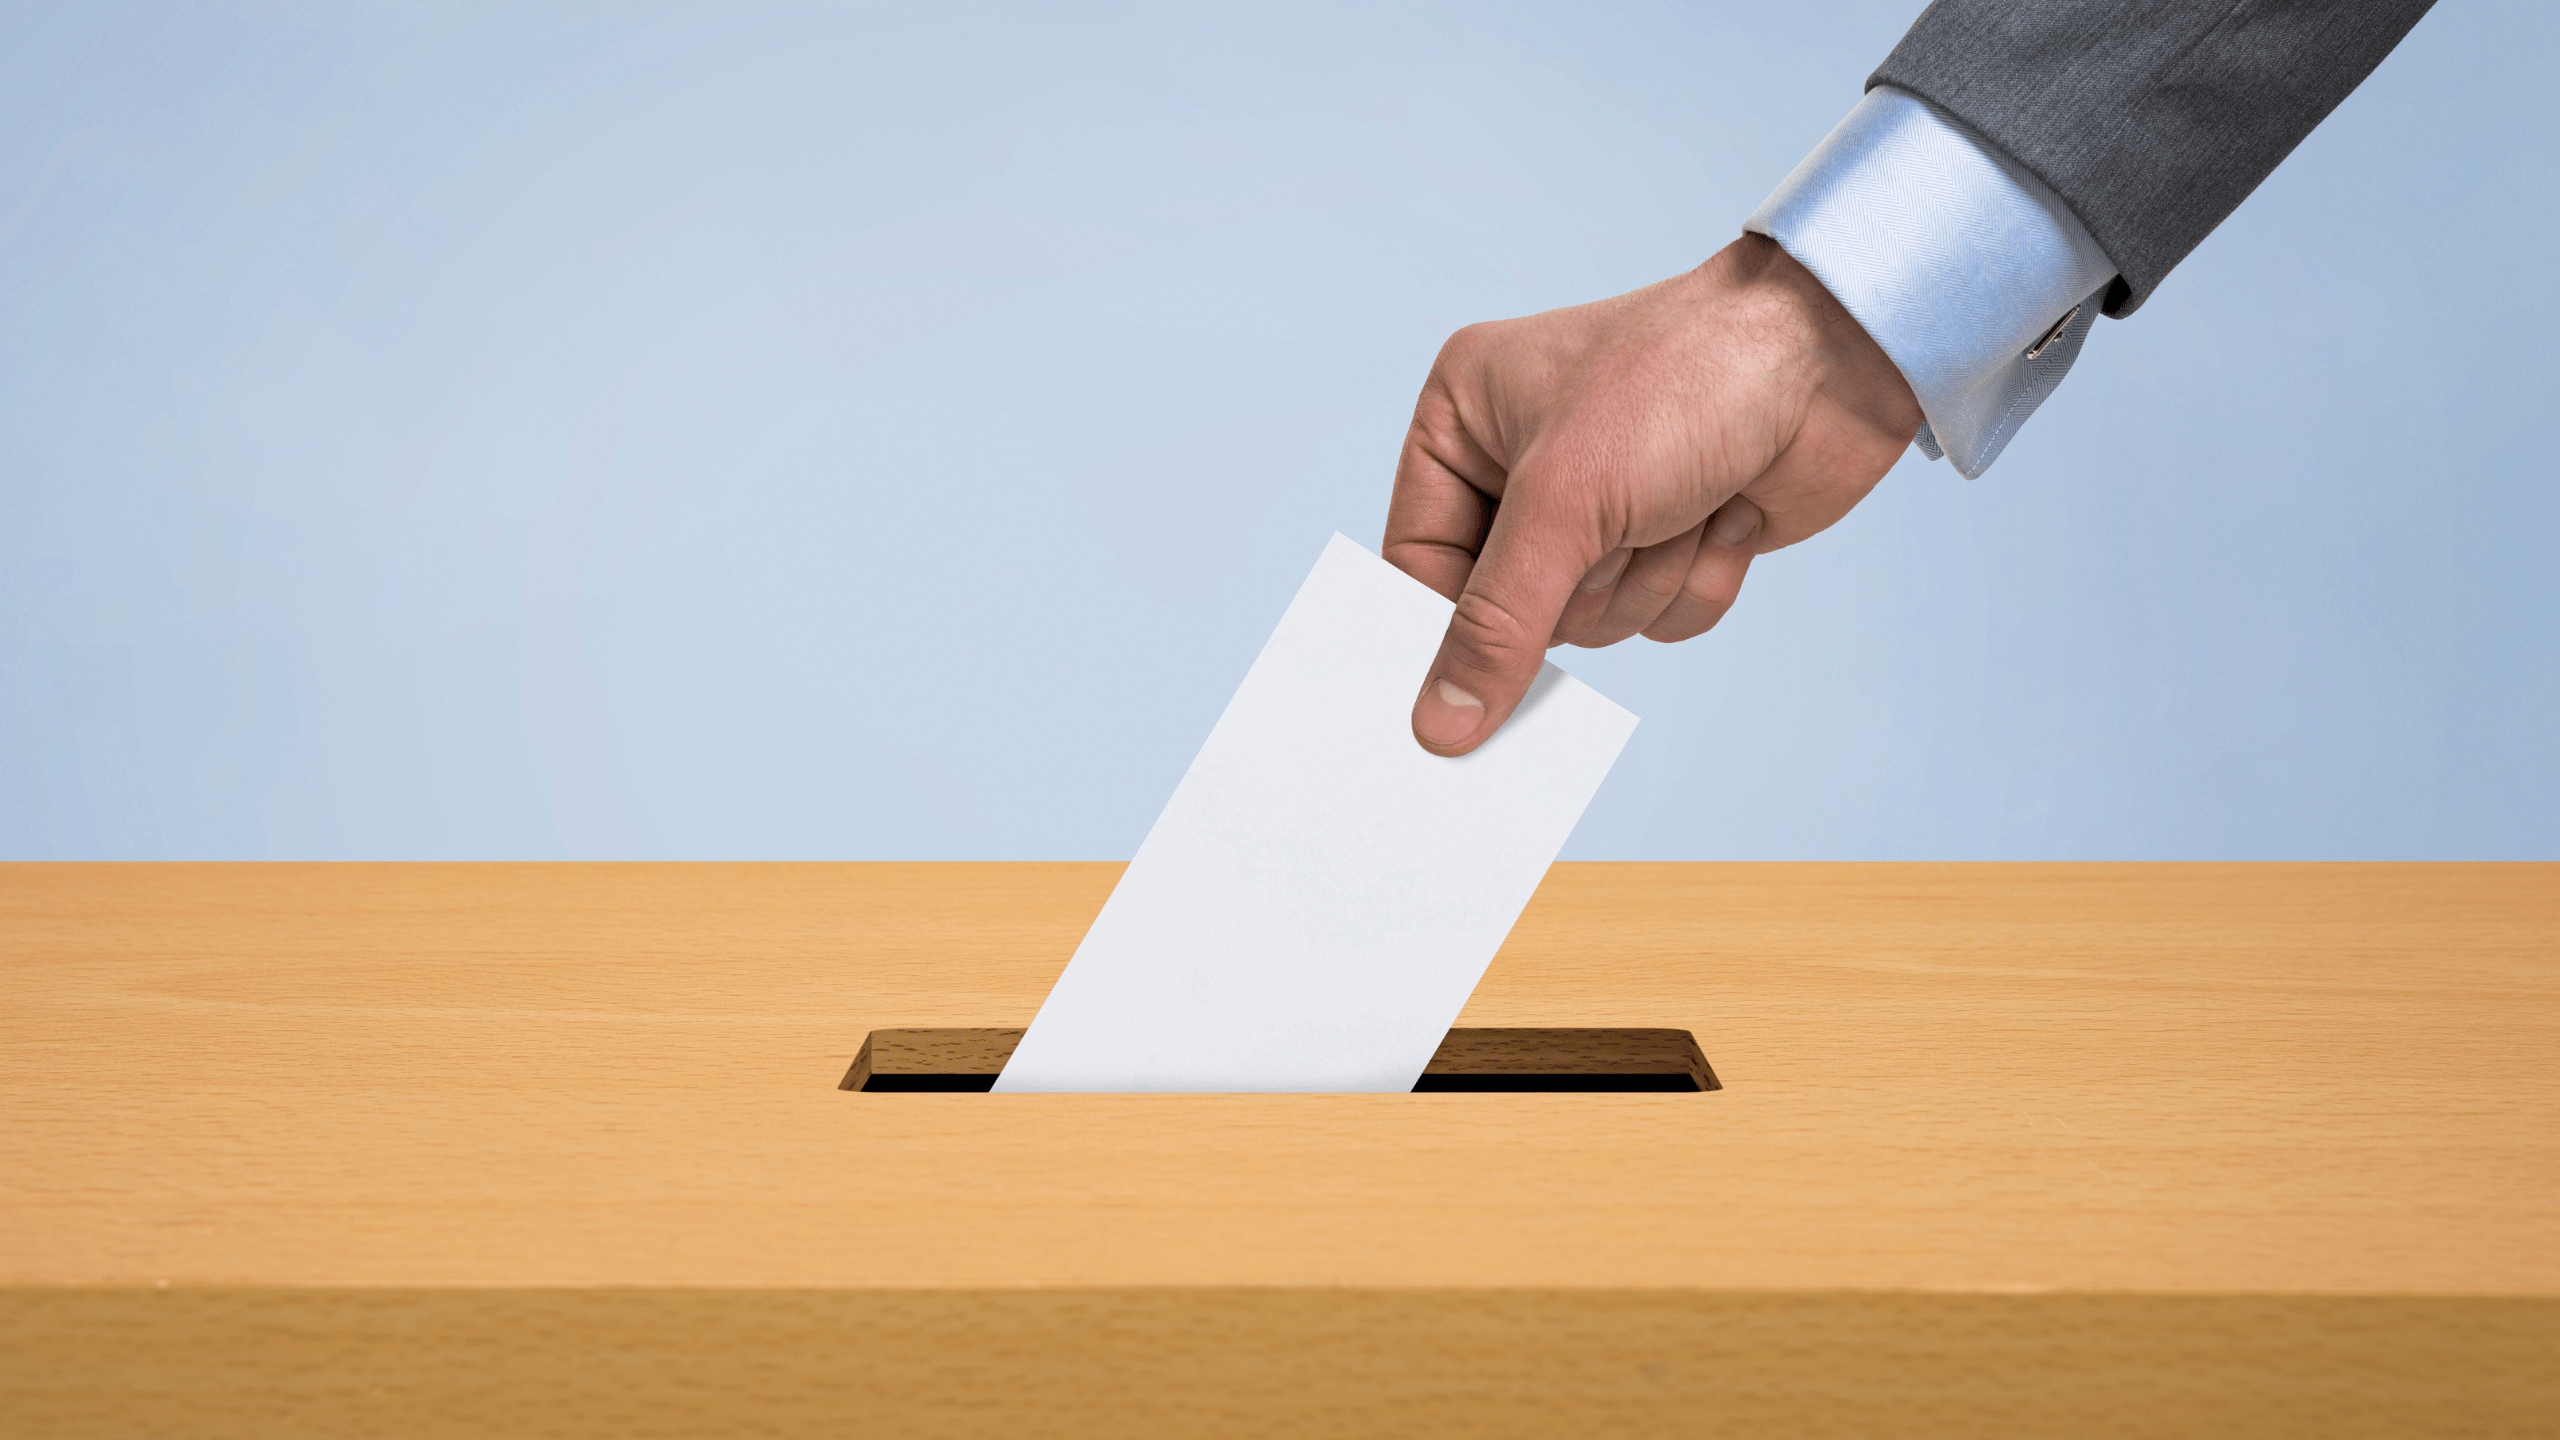 Elezioni comunali in Abruzzo, tre sindaci riconfermati: Biondi, Vagnoni e Piccioni. A Spoltore vince Chiara Trulli